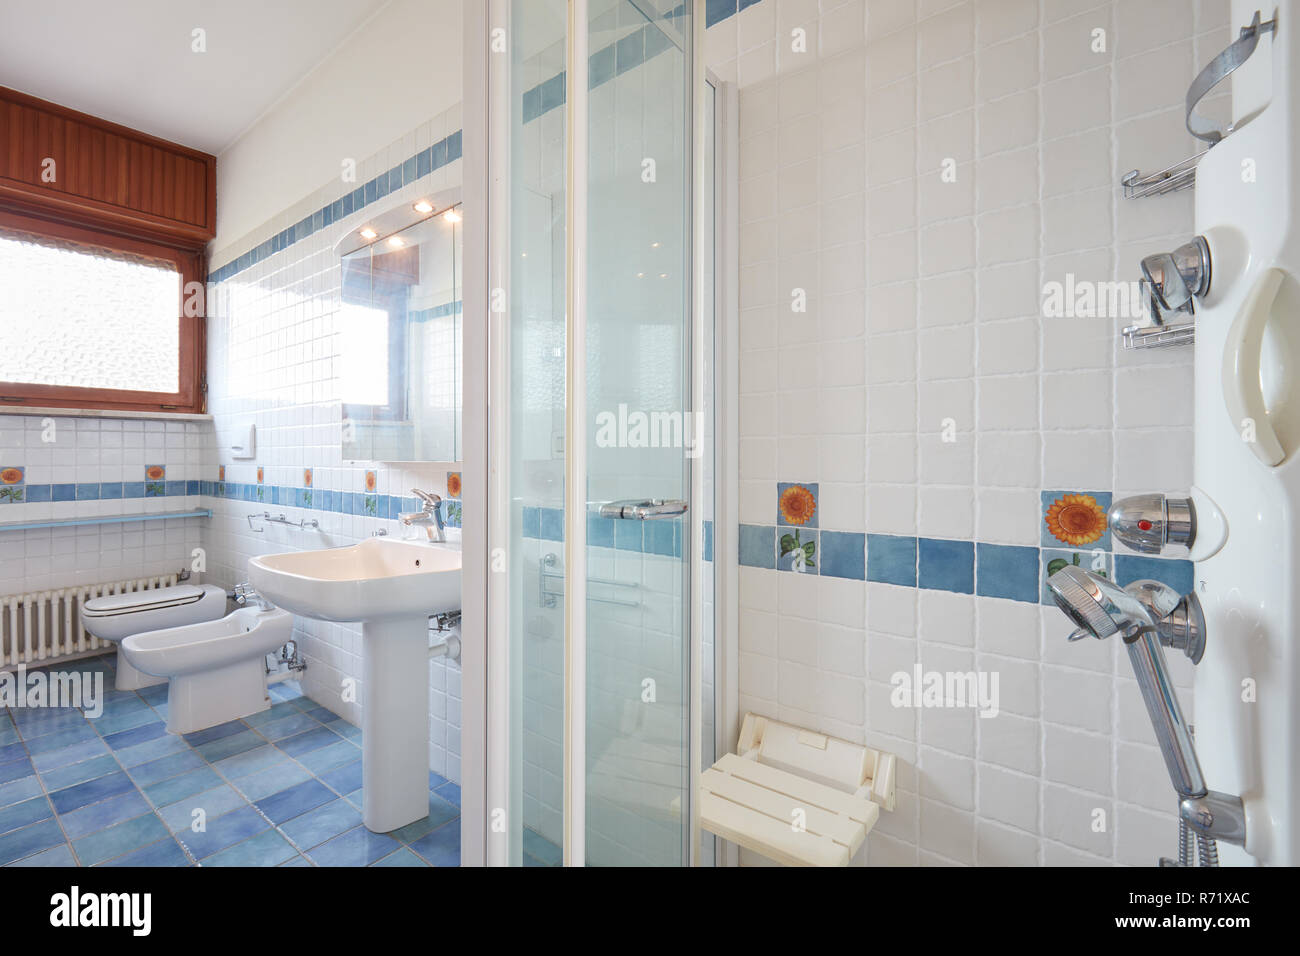 Bad mit großer Dusche in der Wohnung Interieur Stockfoto